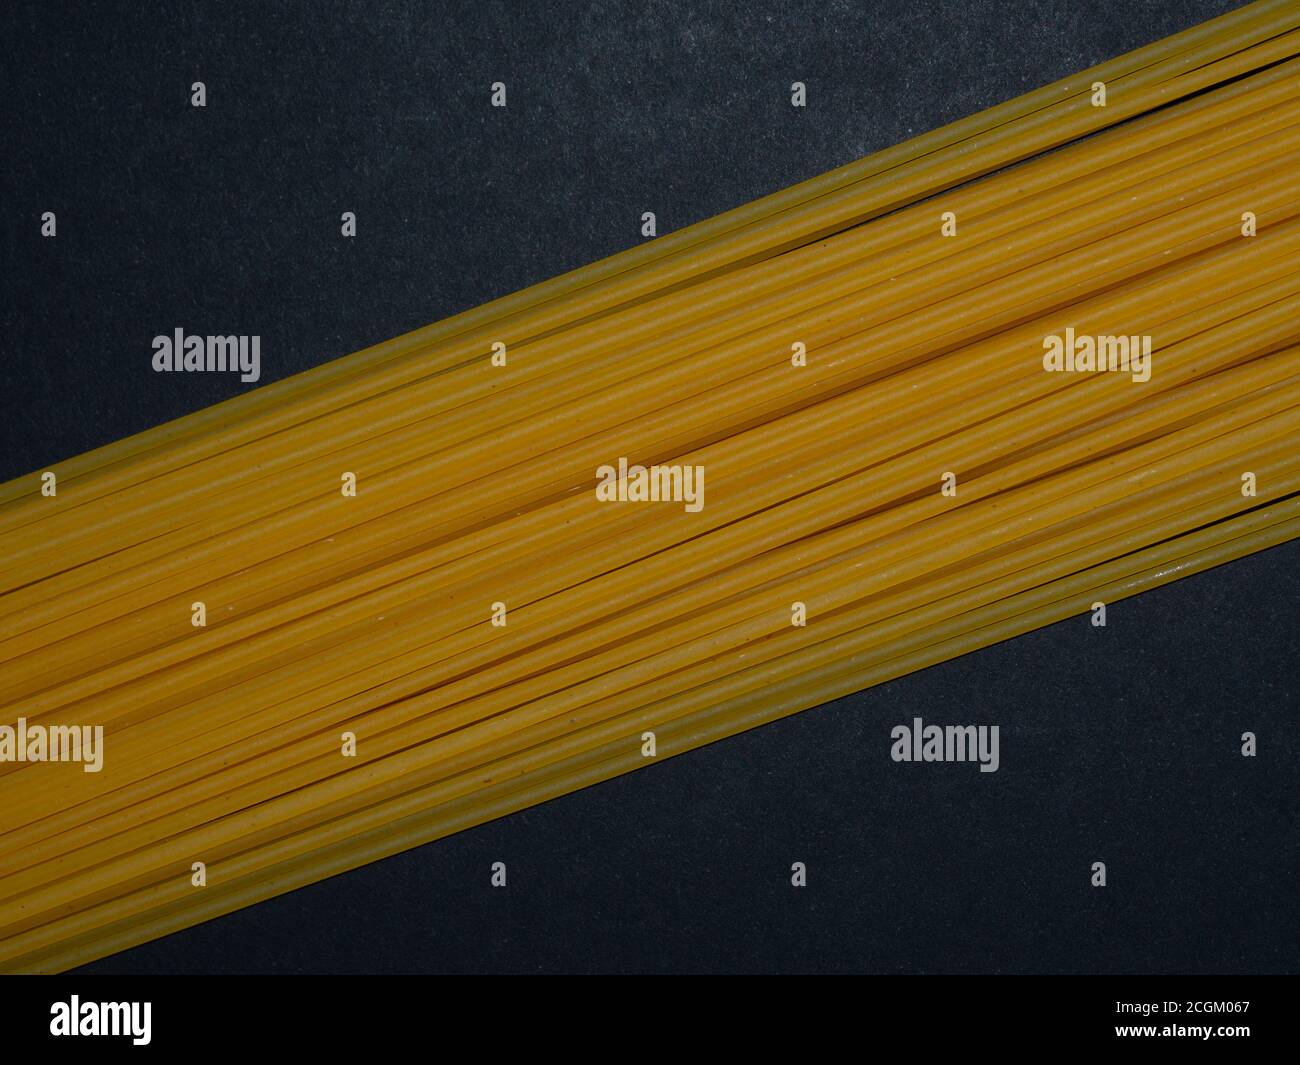 Spaghetti crus. Pâtes disposées dans un motif géométrique sur fond noir. Concept de menu. Arrière-plan du texte. Banque D'Images